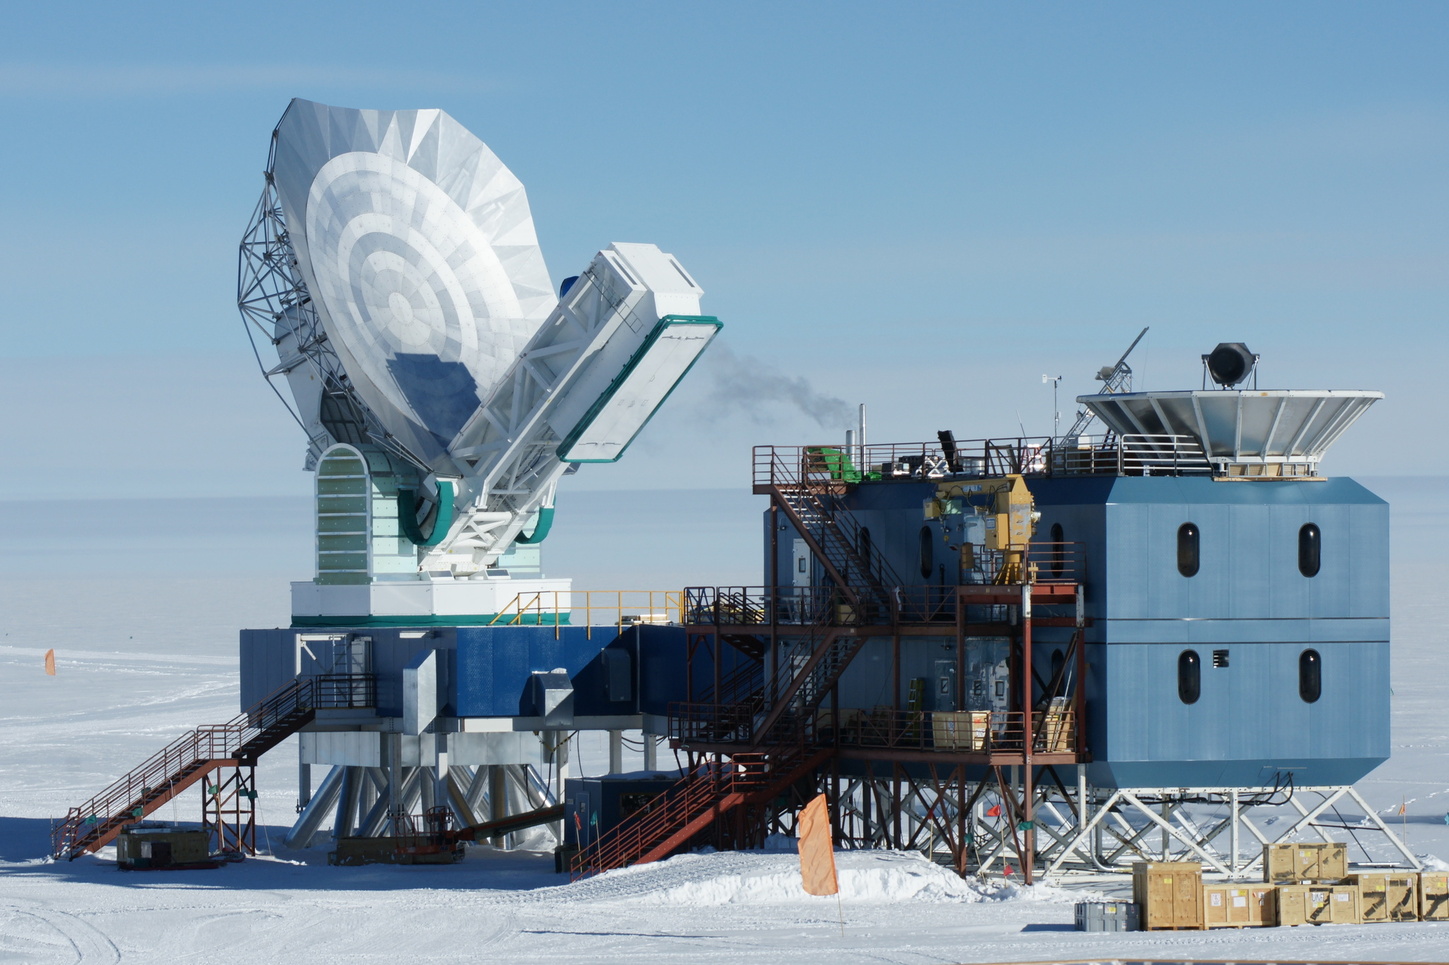 Антарктический научно исследовательский. Станция Амундсен Скотт в Антарктиде. Южный Полярный телескоп – Антарктида. Южный Полярный телескоп (SPT), Антарктида. Американская Полярная станция Амундсен-Скотт.